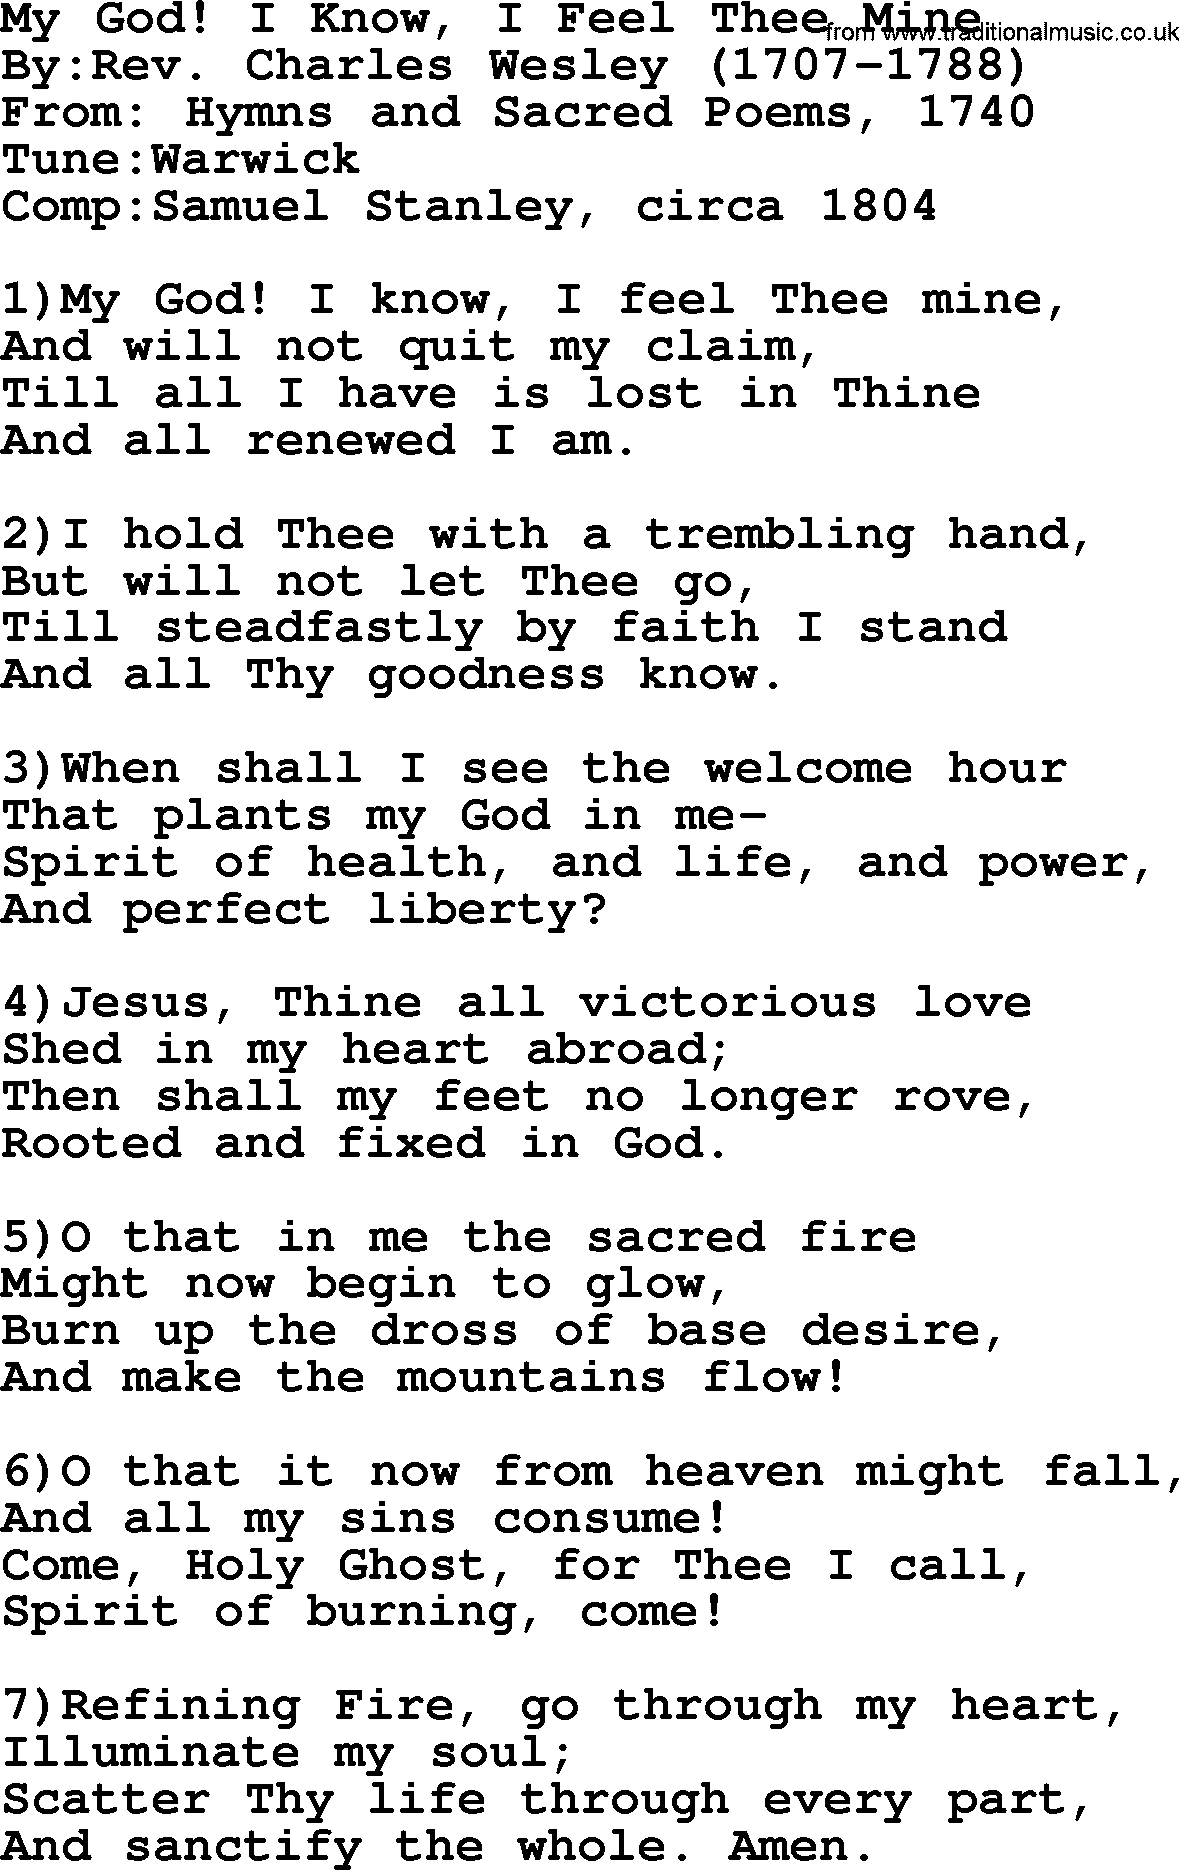 Methodist Hymn: My God! I Know, I Feel Thee Mine, lyrics